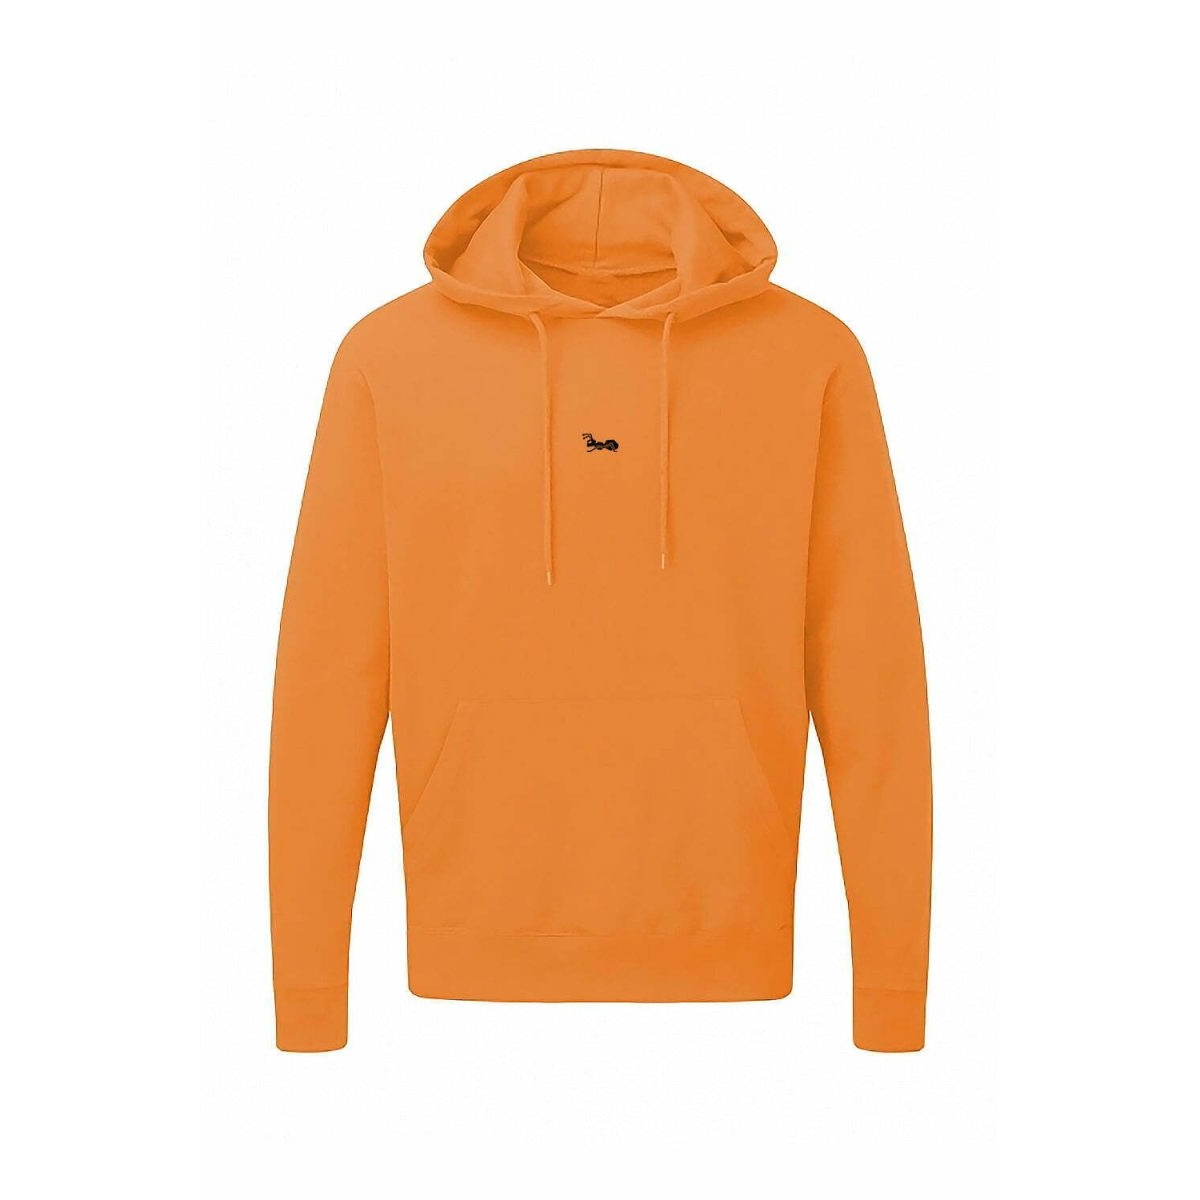 Herren Hoodie Kapuzenpullover mit Bauchtasche Sweatshirt Pullover Sweatjacke Langarm Bright Orange